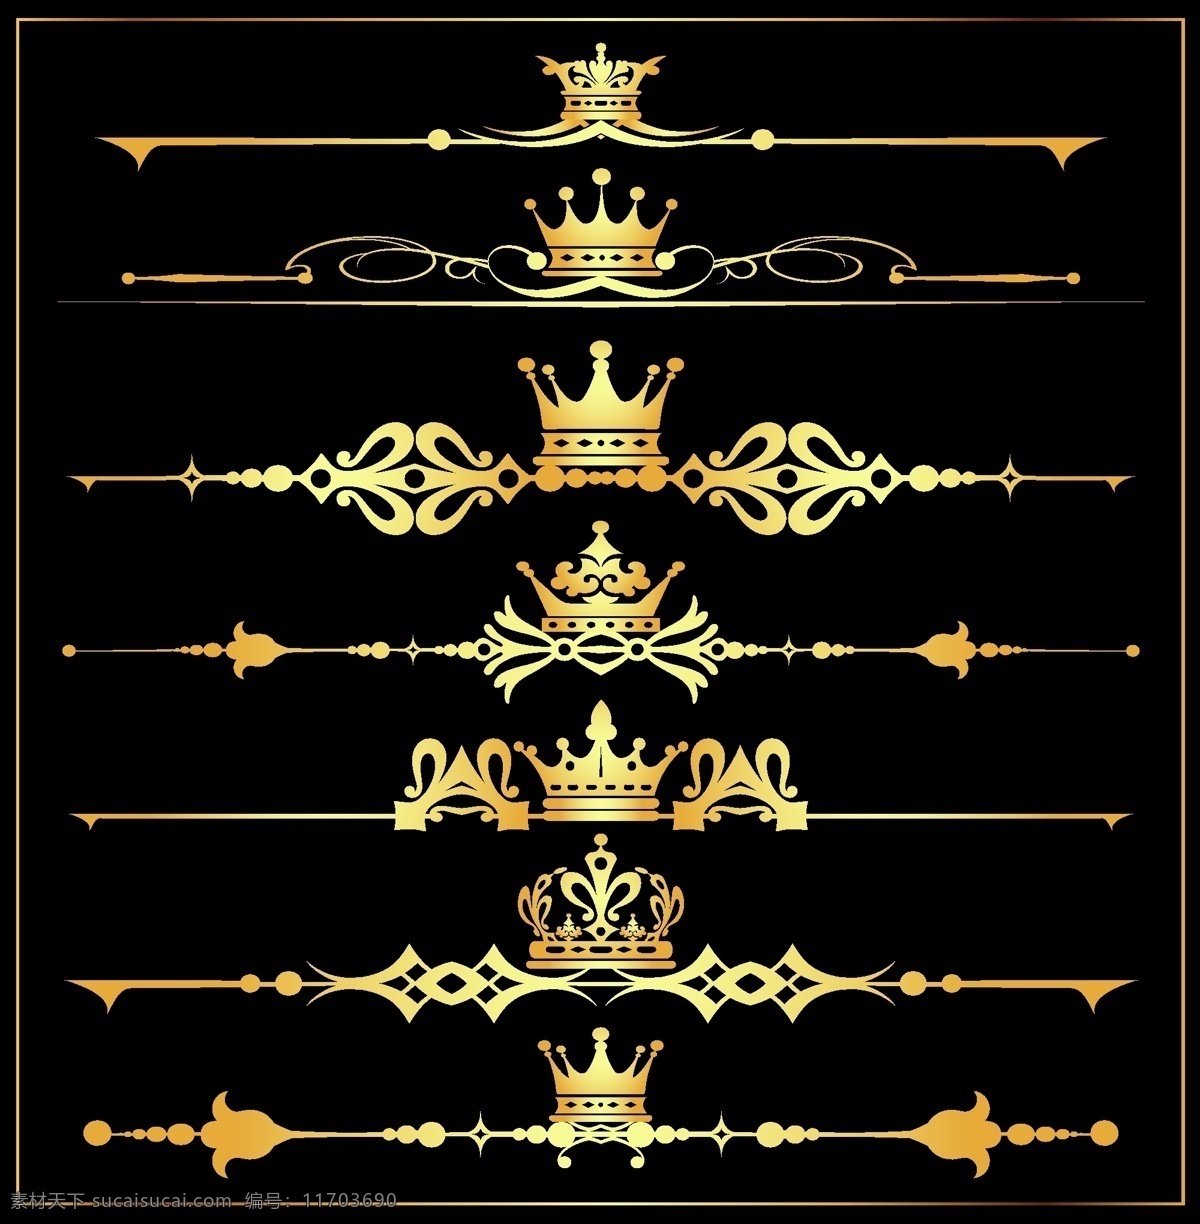 欧洲 高贵 复古 皇冠 网页设计 标签 金色 饰品 矢量素材 设计素材